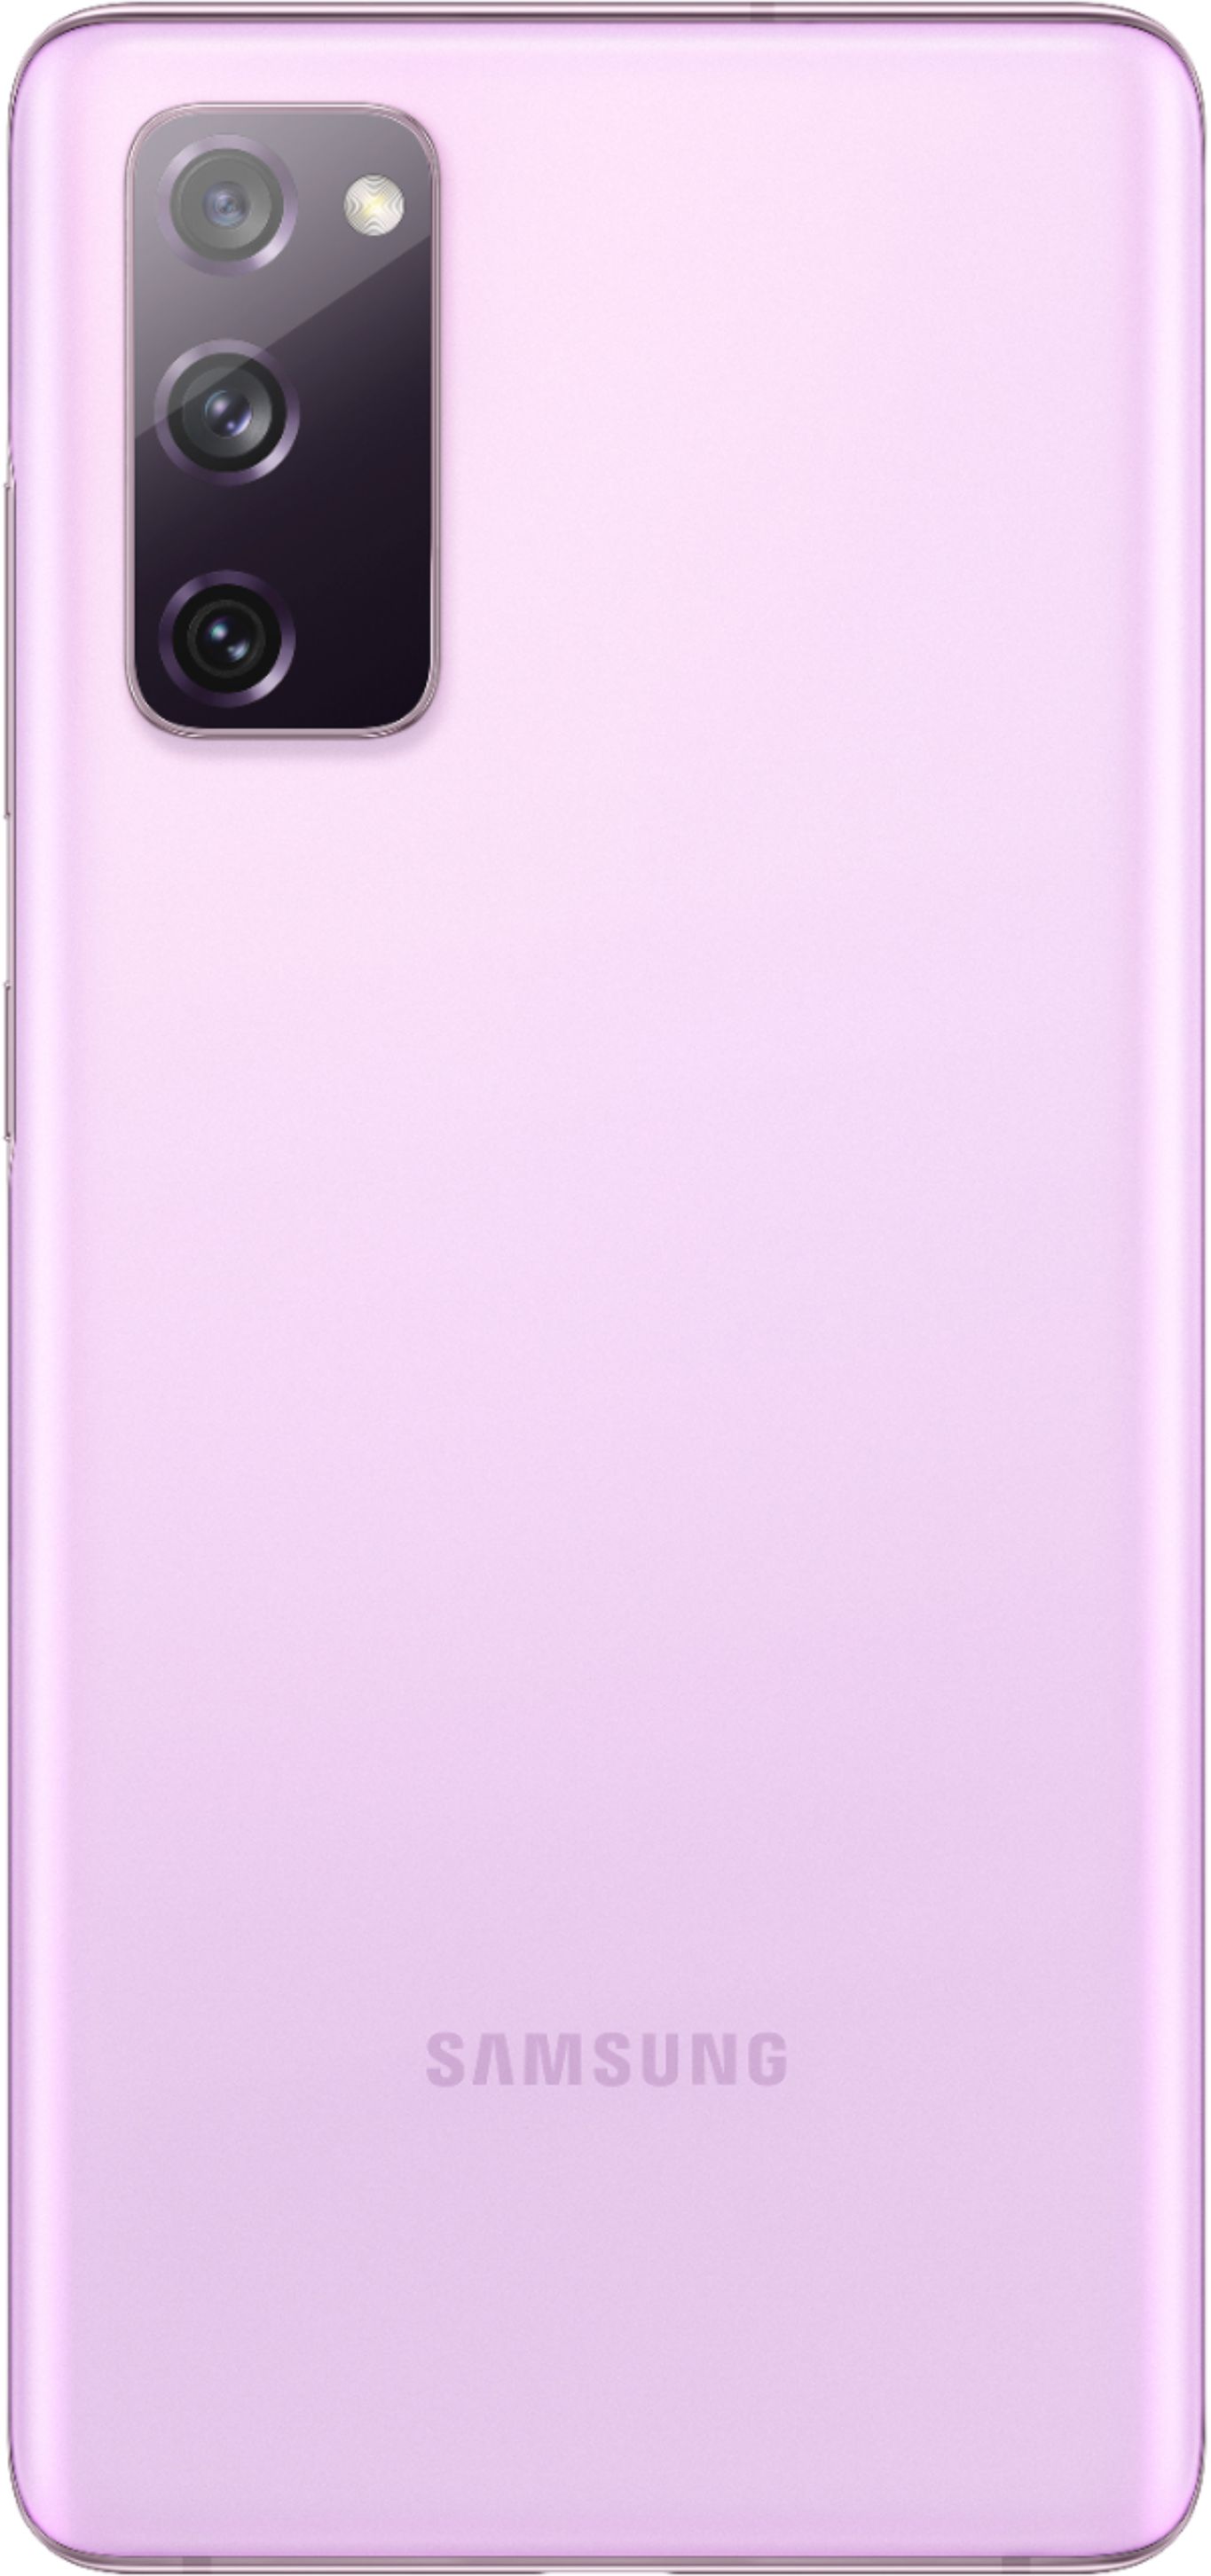 Samsung Galaxy S20 Fe 5g Uw 128gb Cloud Lavender Verizon Sm